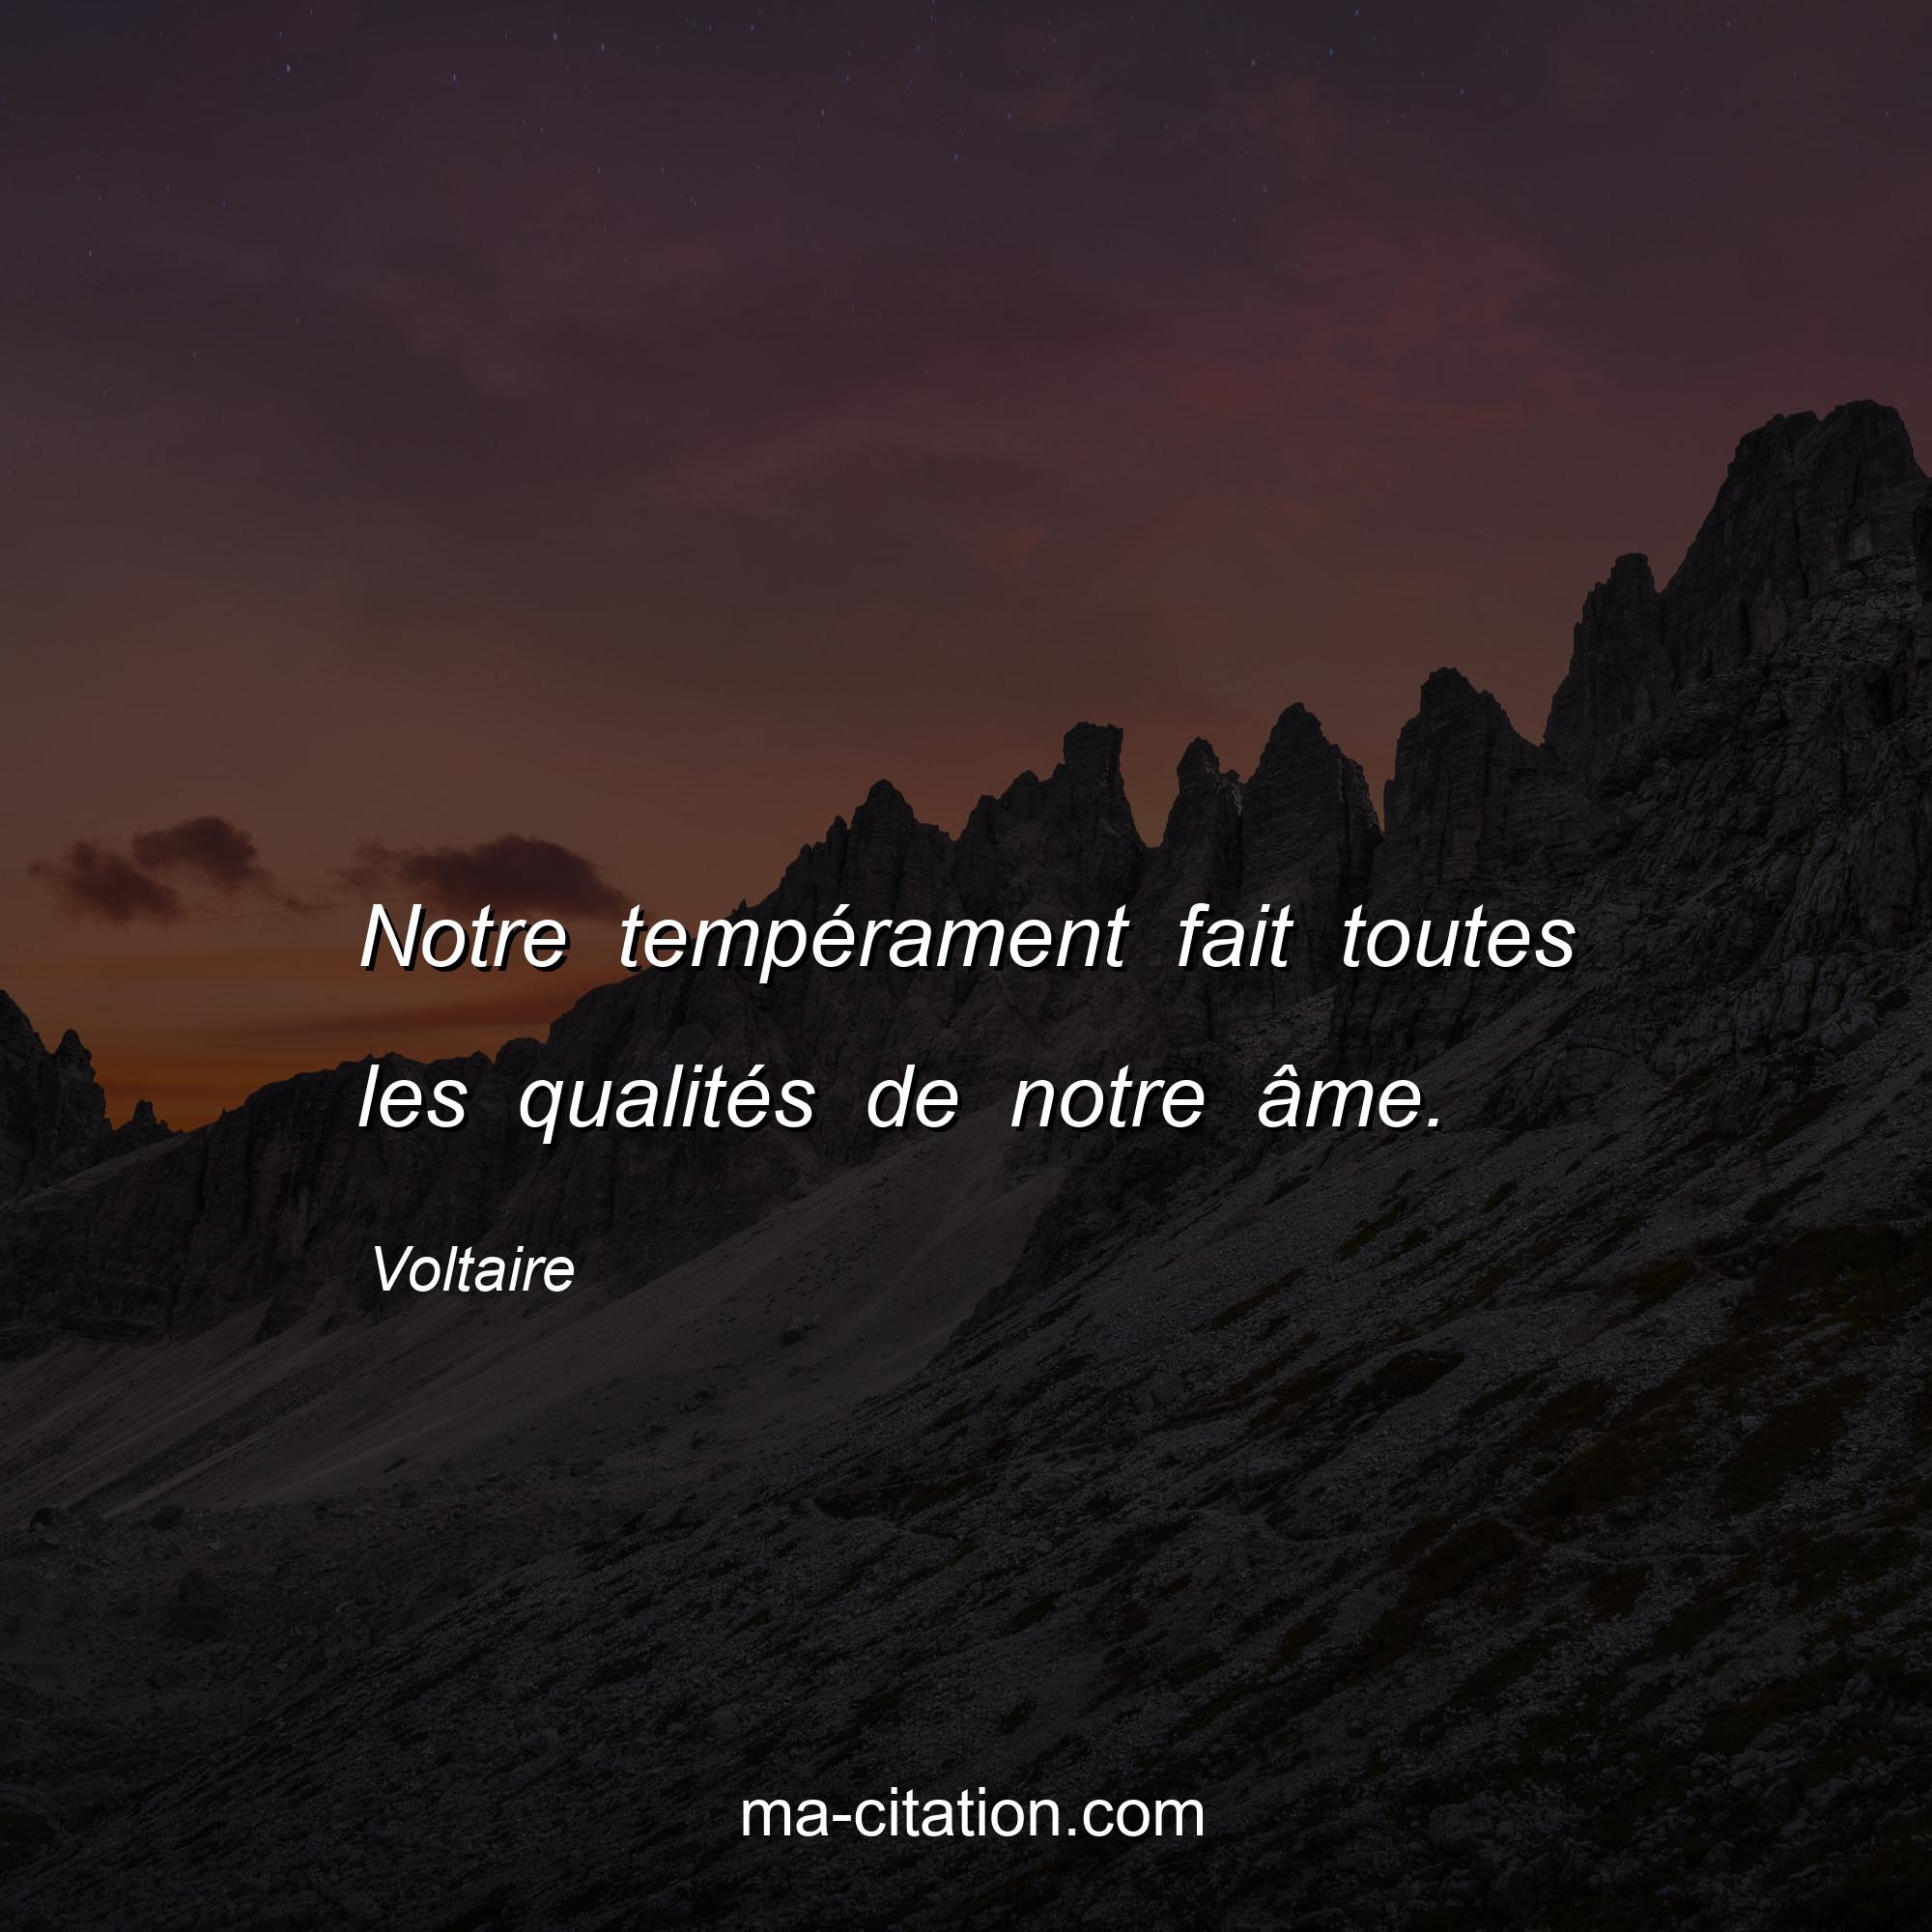 Voltaire : Notre tempérament fait toutes les qualités de notre âme.